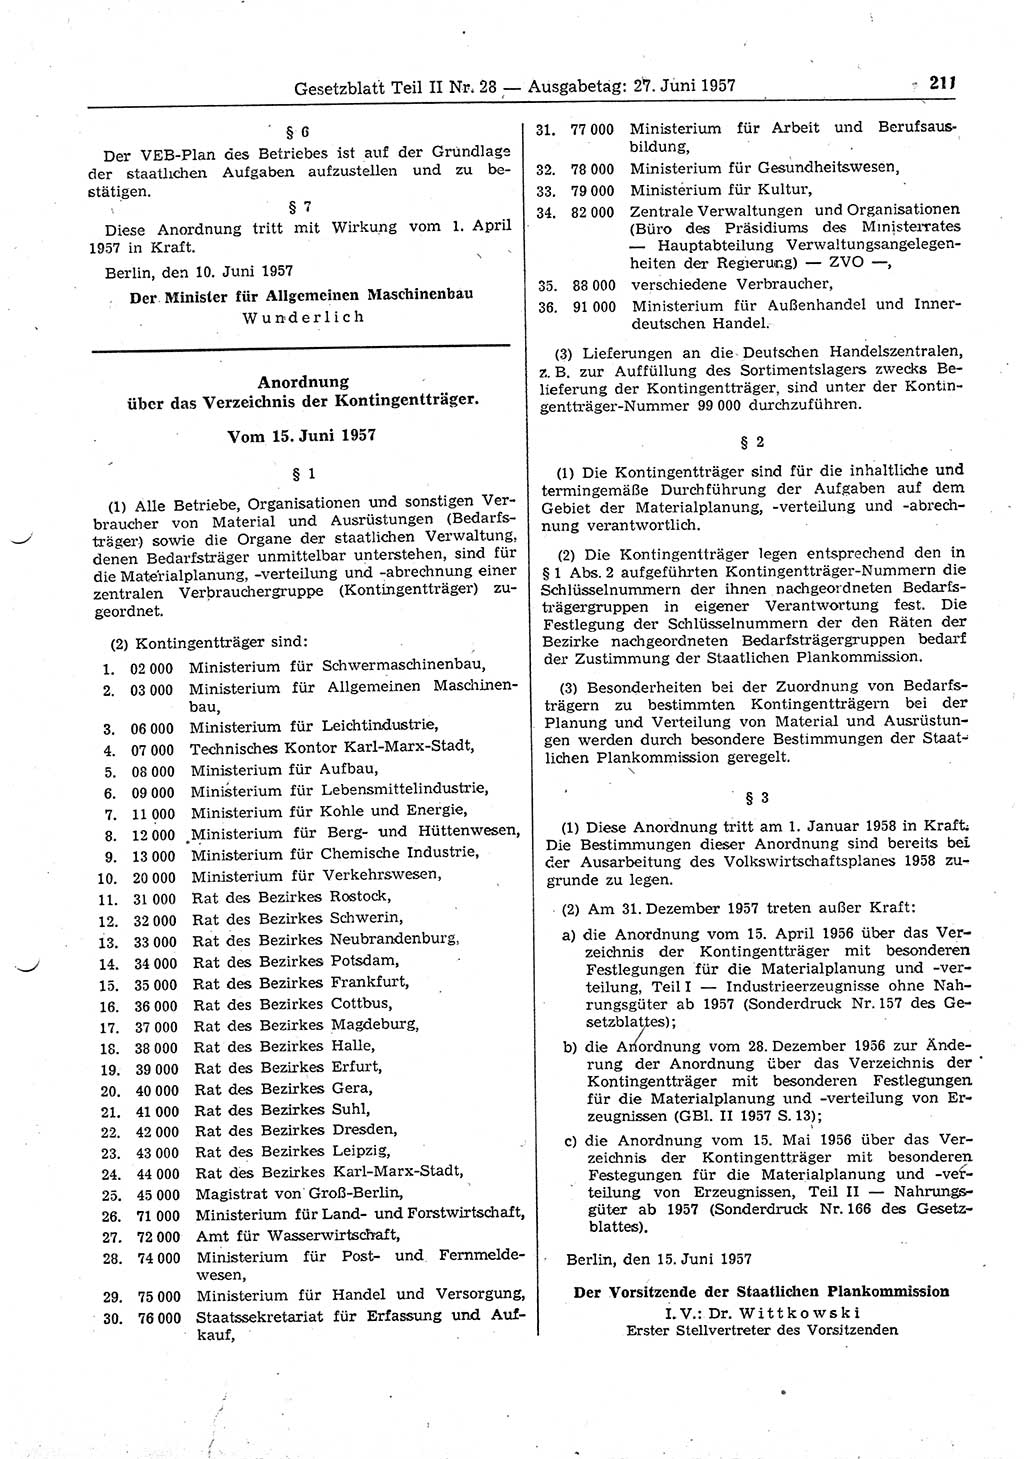 Gesetzblatt (GBl.) der Deutschen Demokratischen Republik (DDR) Teil â… â… 1957, Seite 211 (GBl. DDR â… â… 1957, S. 211)